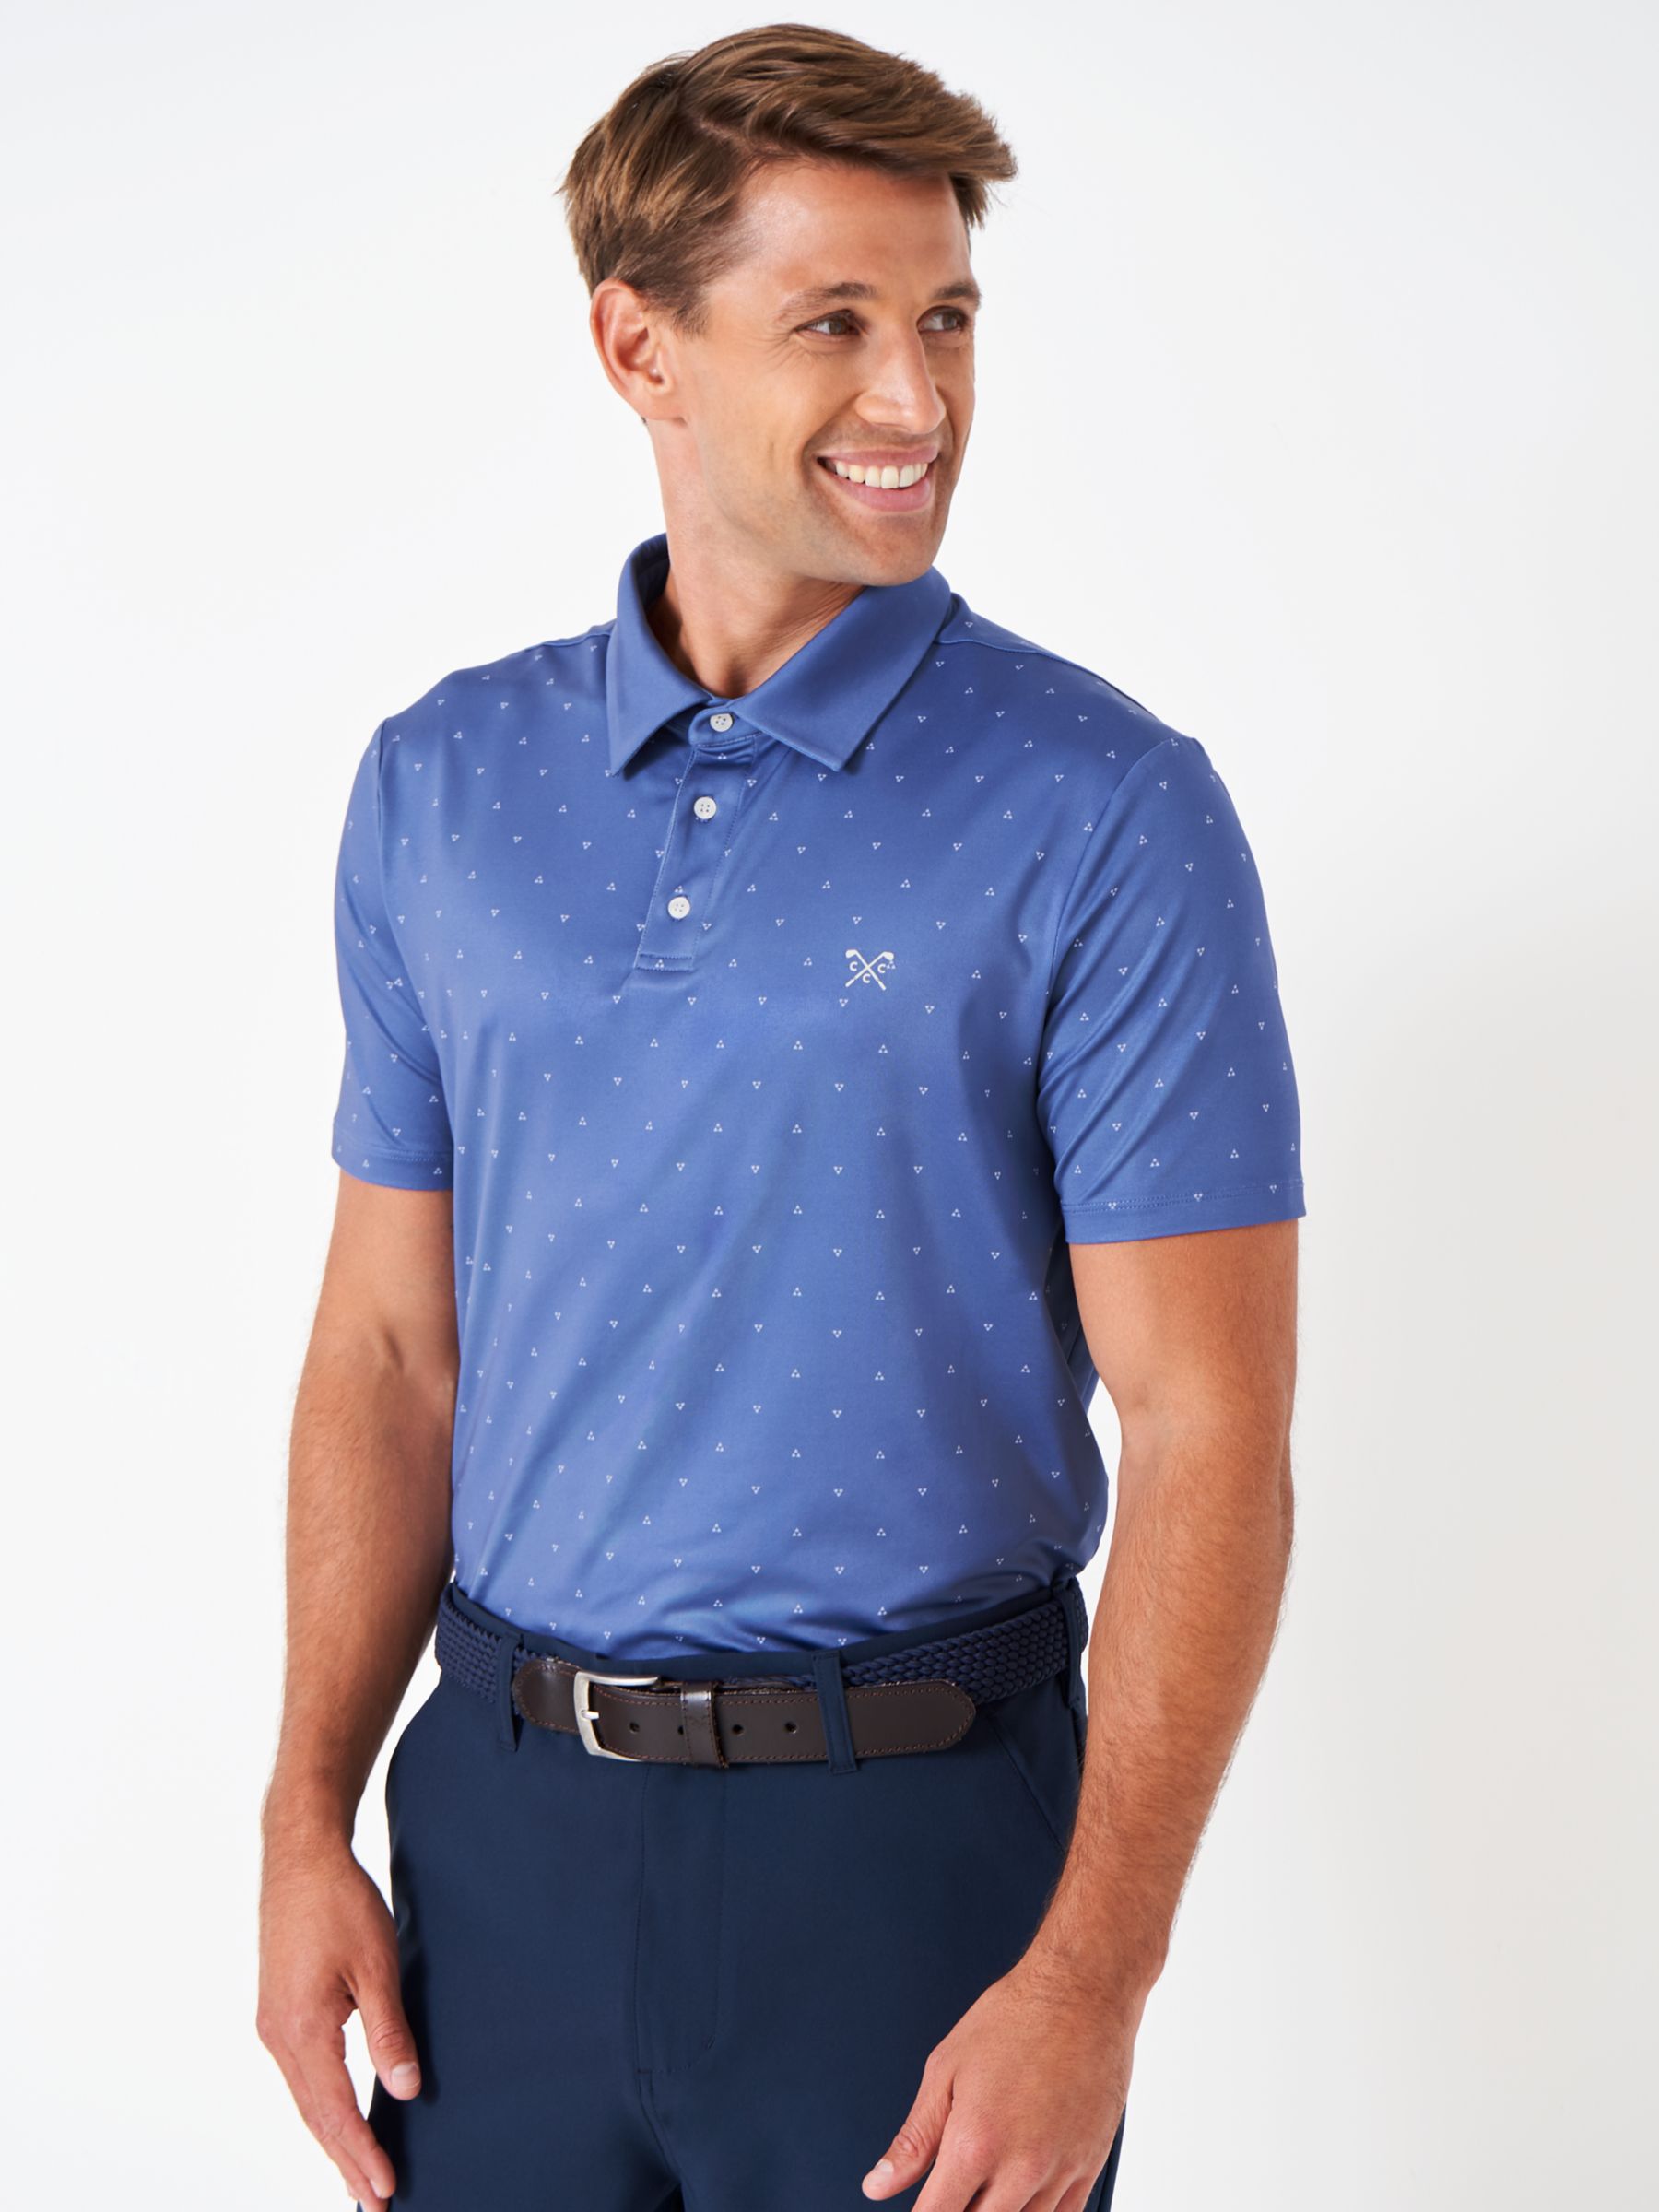 Рубашка-поло для гольфа Match Crew Clothing, средний синий рубашка поло для гольфа из хлопка с кантом crew clothing светло розовый